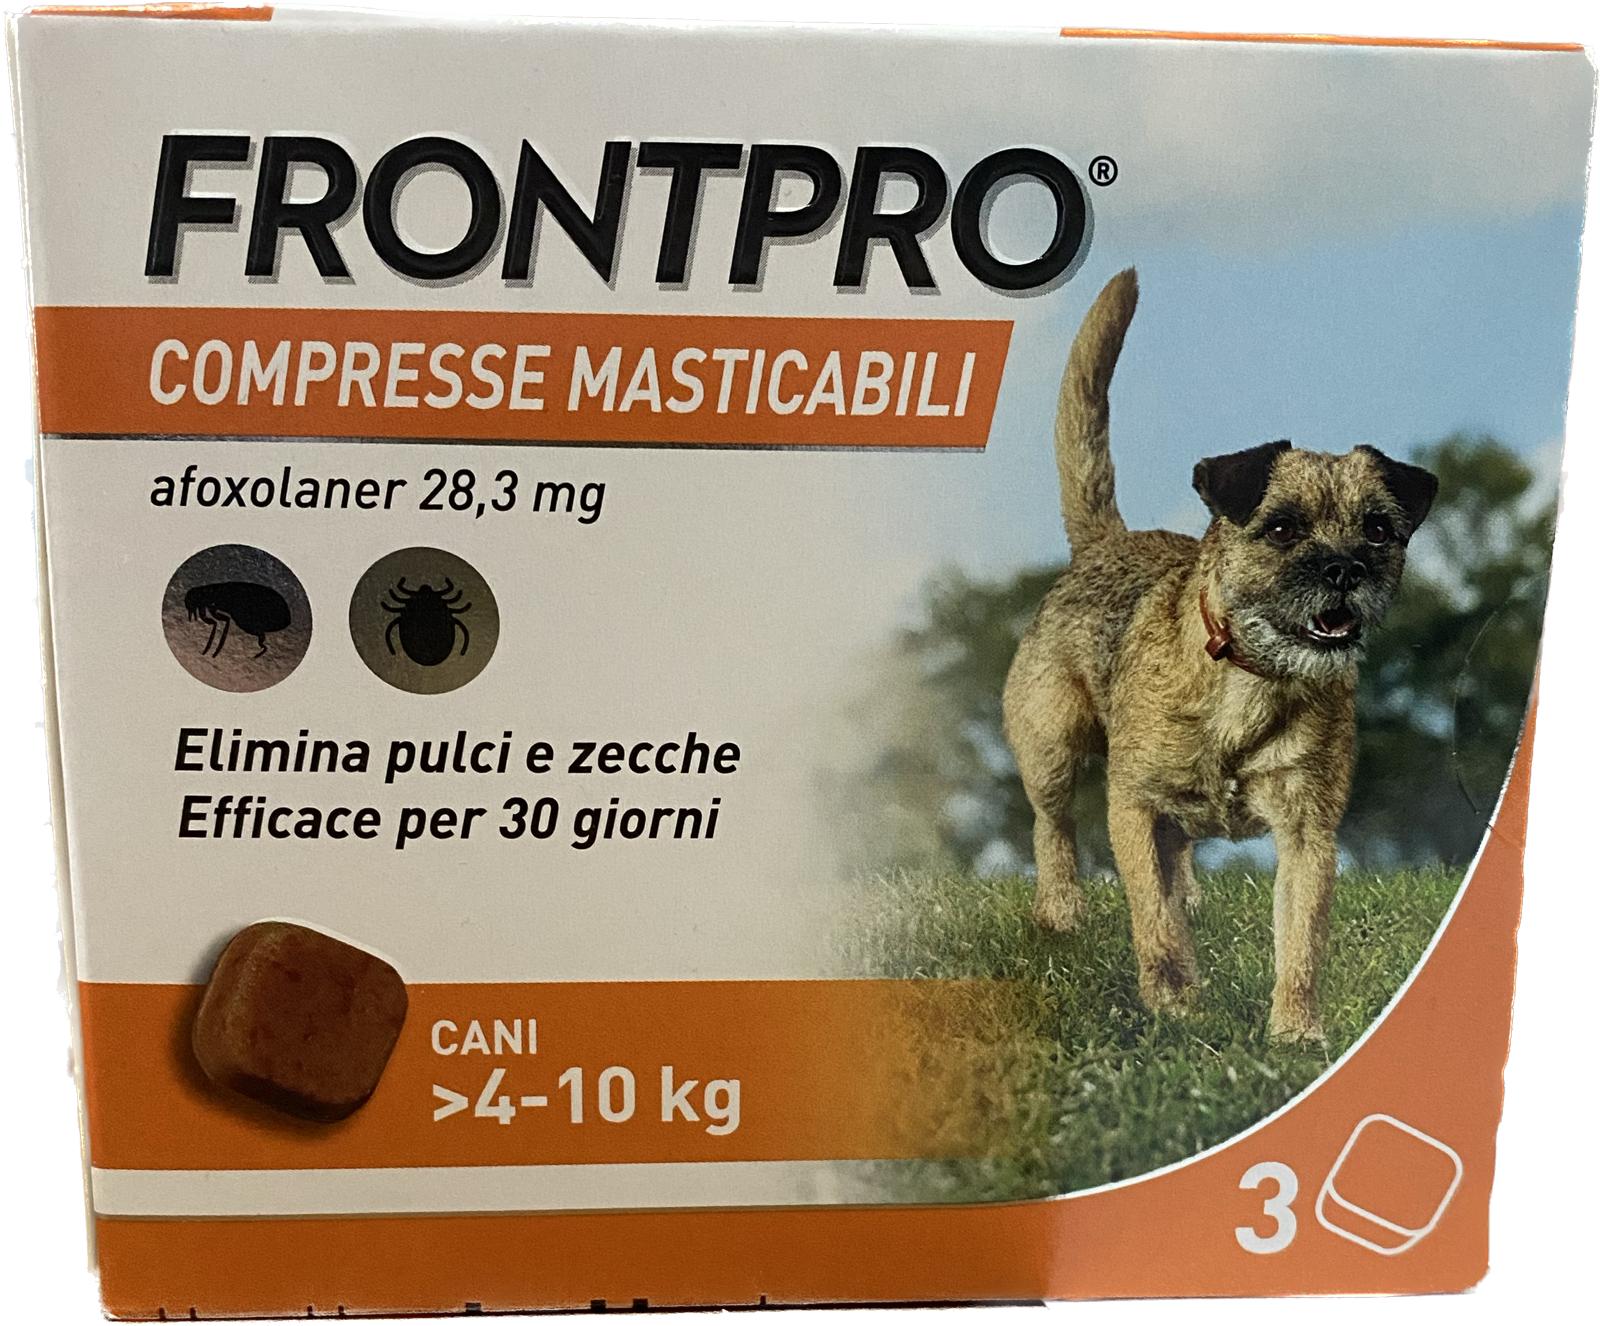 Frontpro Compresse Masticabile 3 compresse 4-10Kg